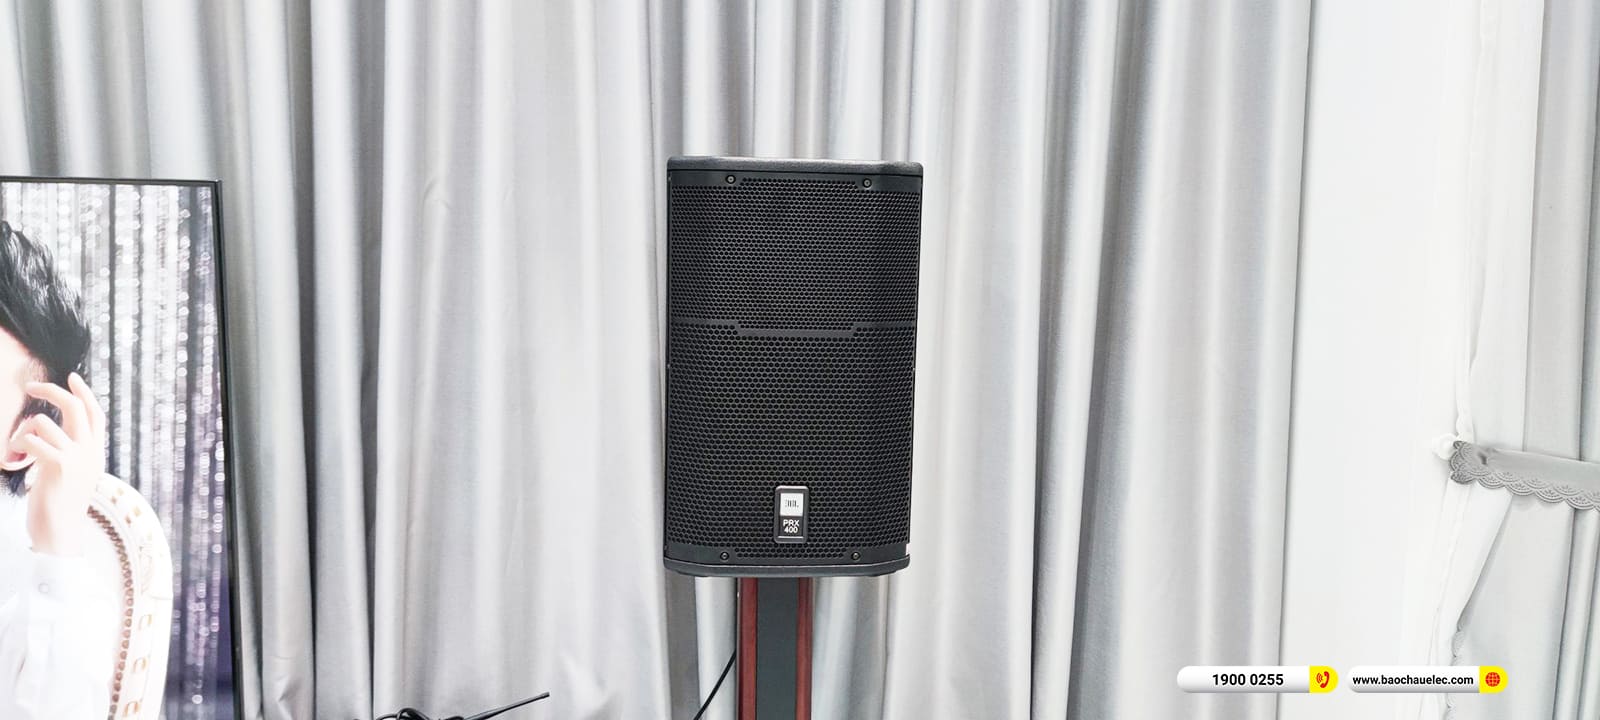 Lắp đặt dàn karaoke JBL gần 78tr cho anh Nhân ở An Giang 